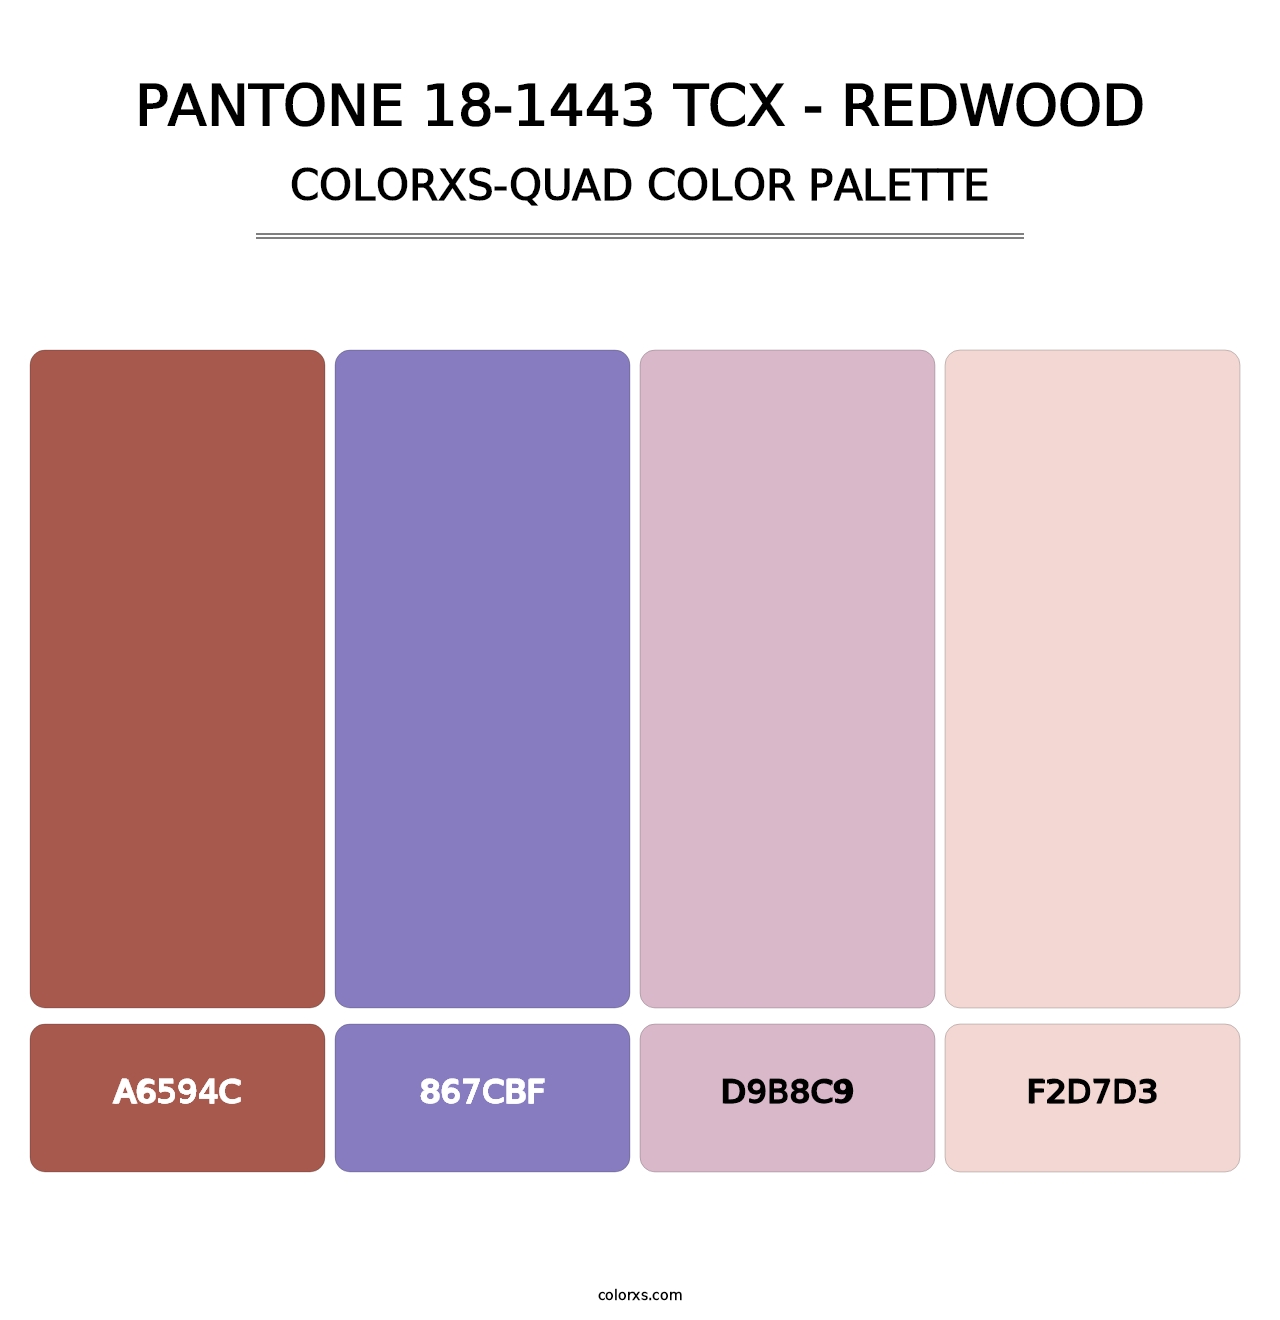 PANTONE 18-1443 TCX - Redwood - Colorxs Quad Palette